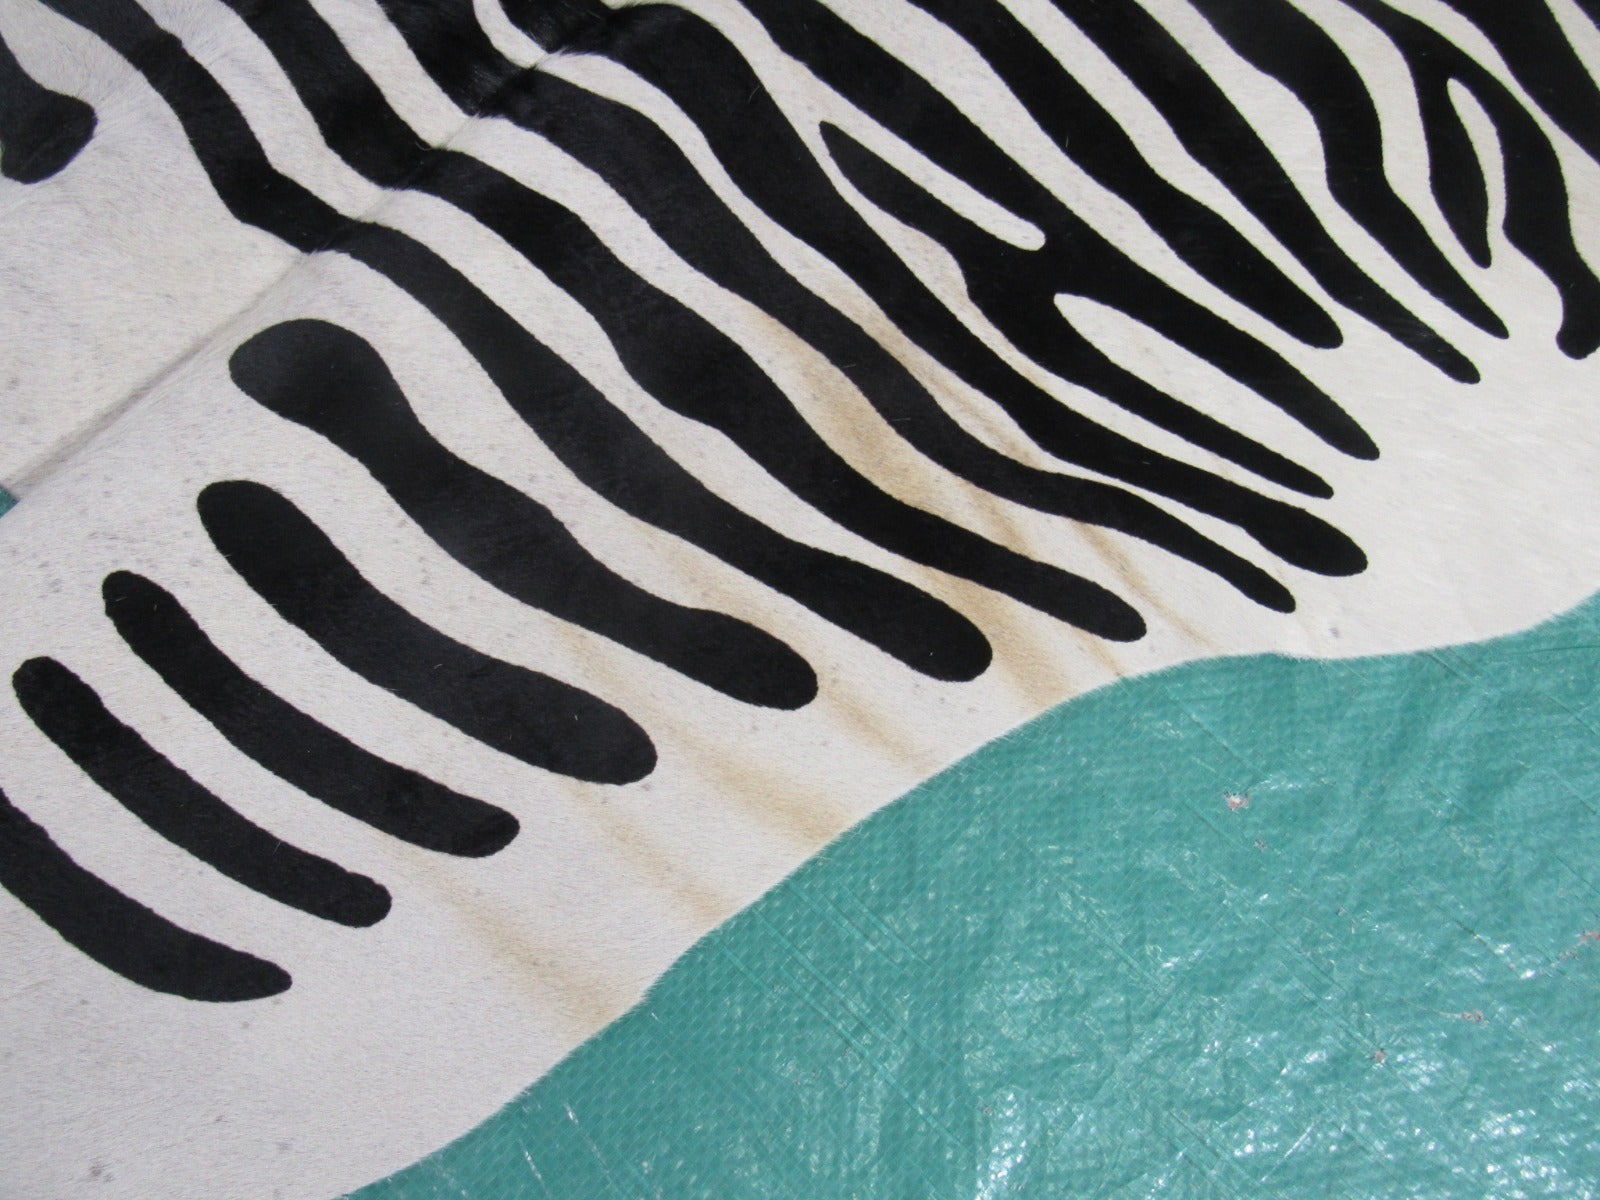 African Zebra Print Cowhide Rug Size: 7' X 6 1/2' Black/White Zebra Cowhide Rug C-1359